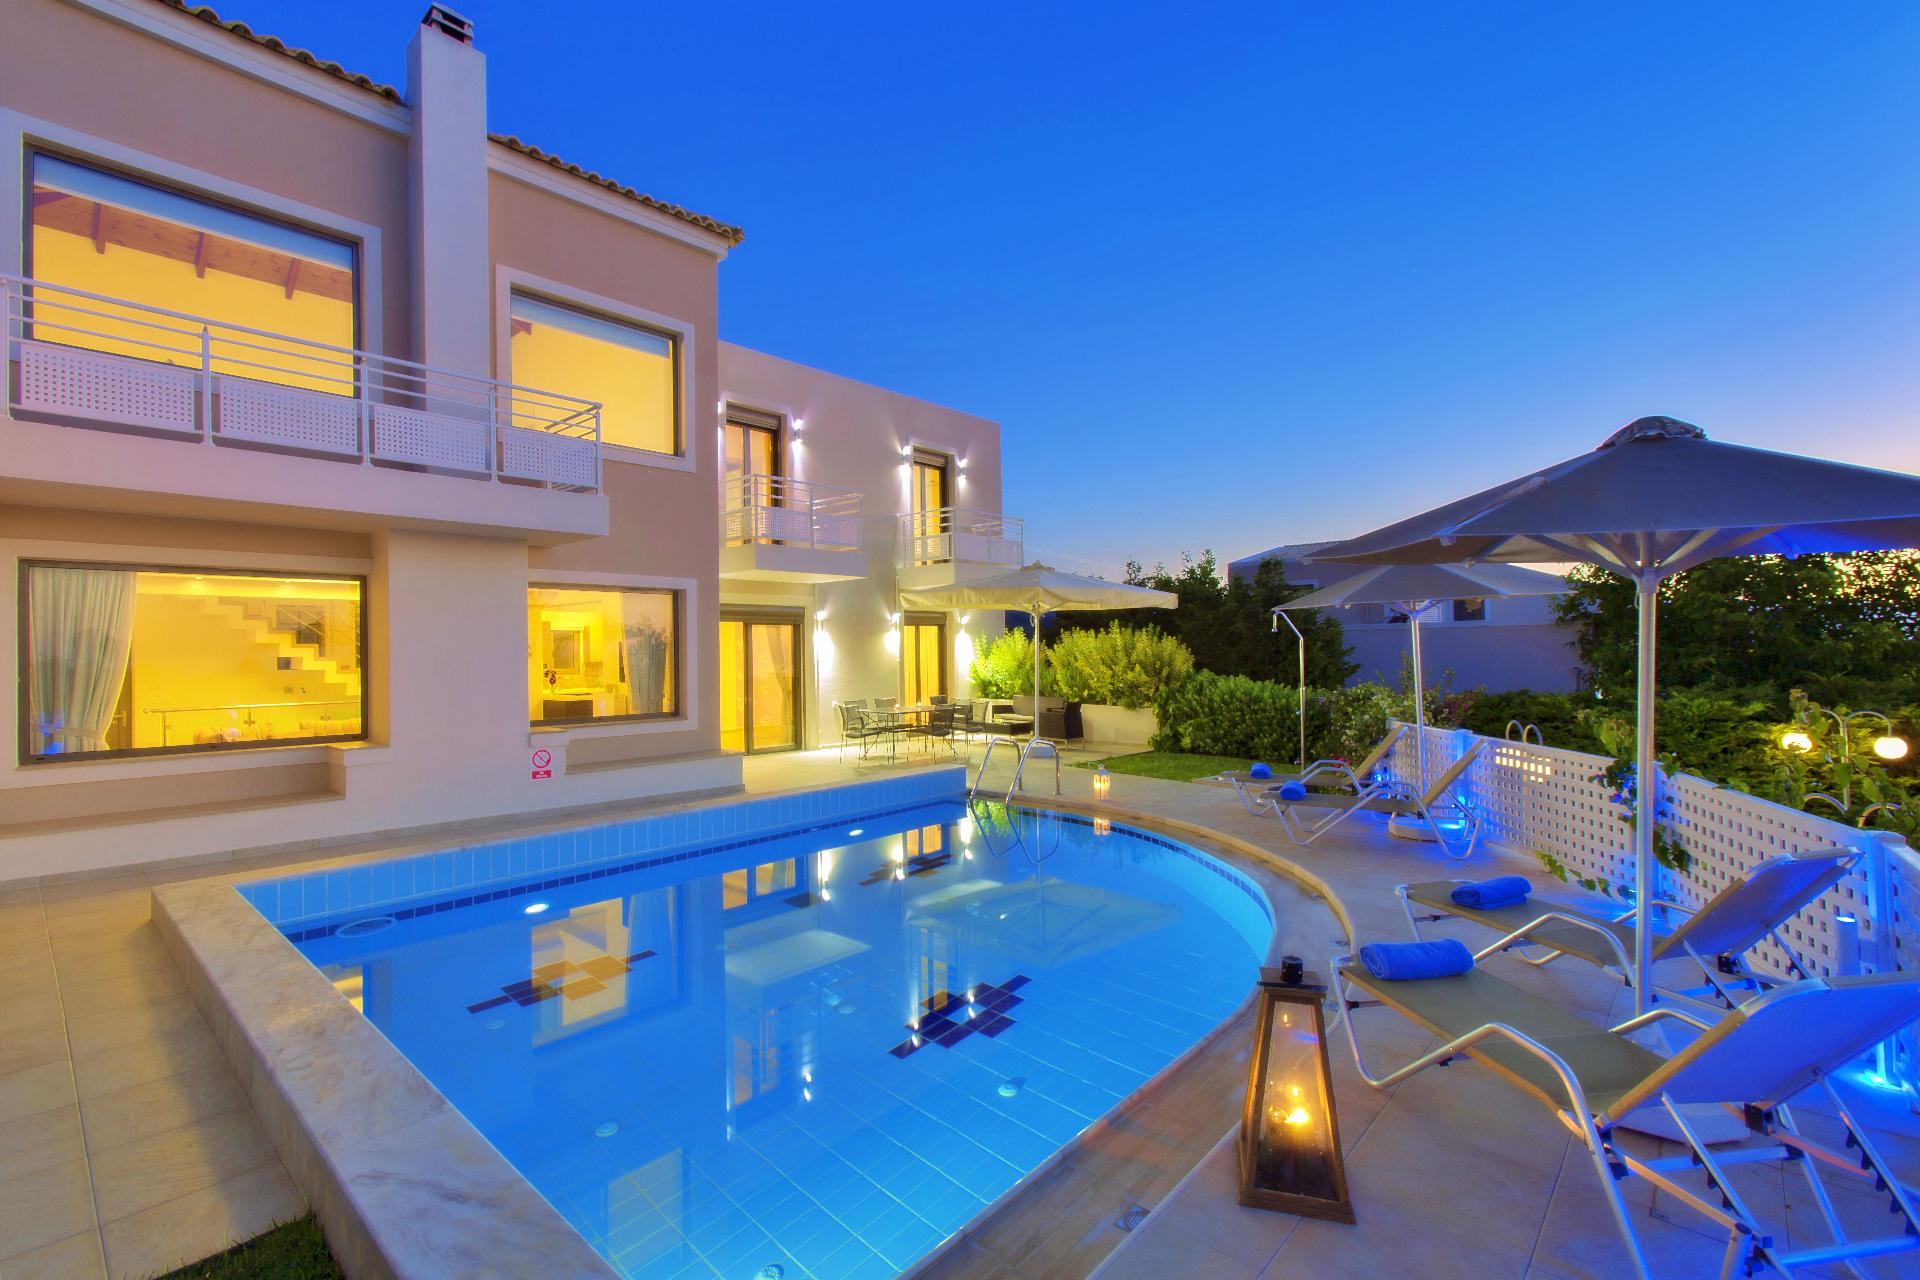 Ferienhaus mit Privatpool für 6 Personen  + 1 Ferienhaus in Griechenland